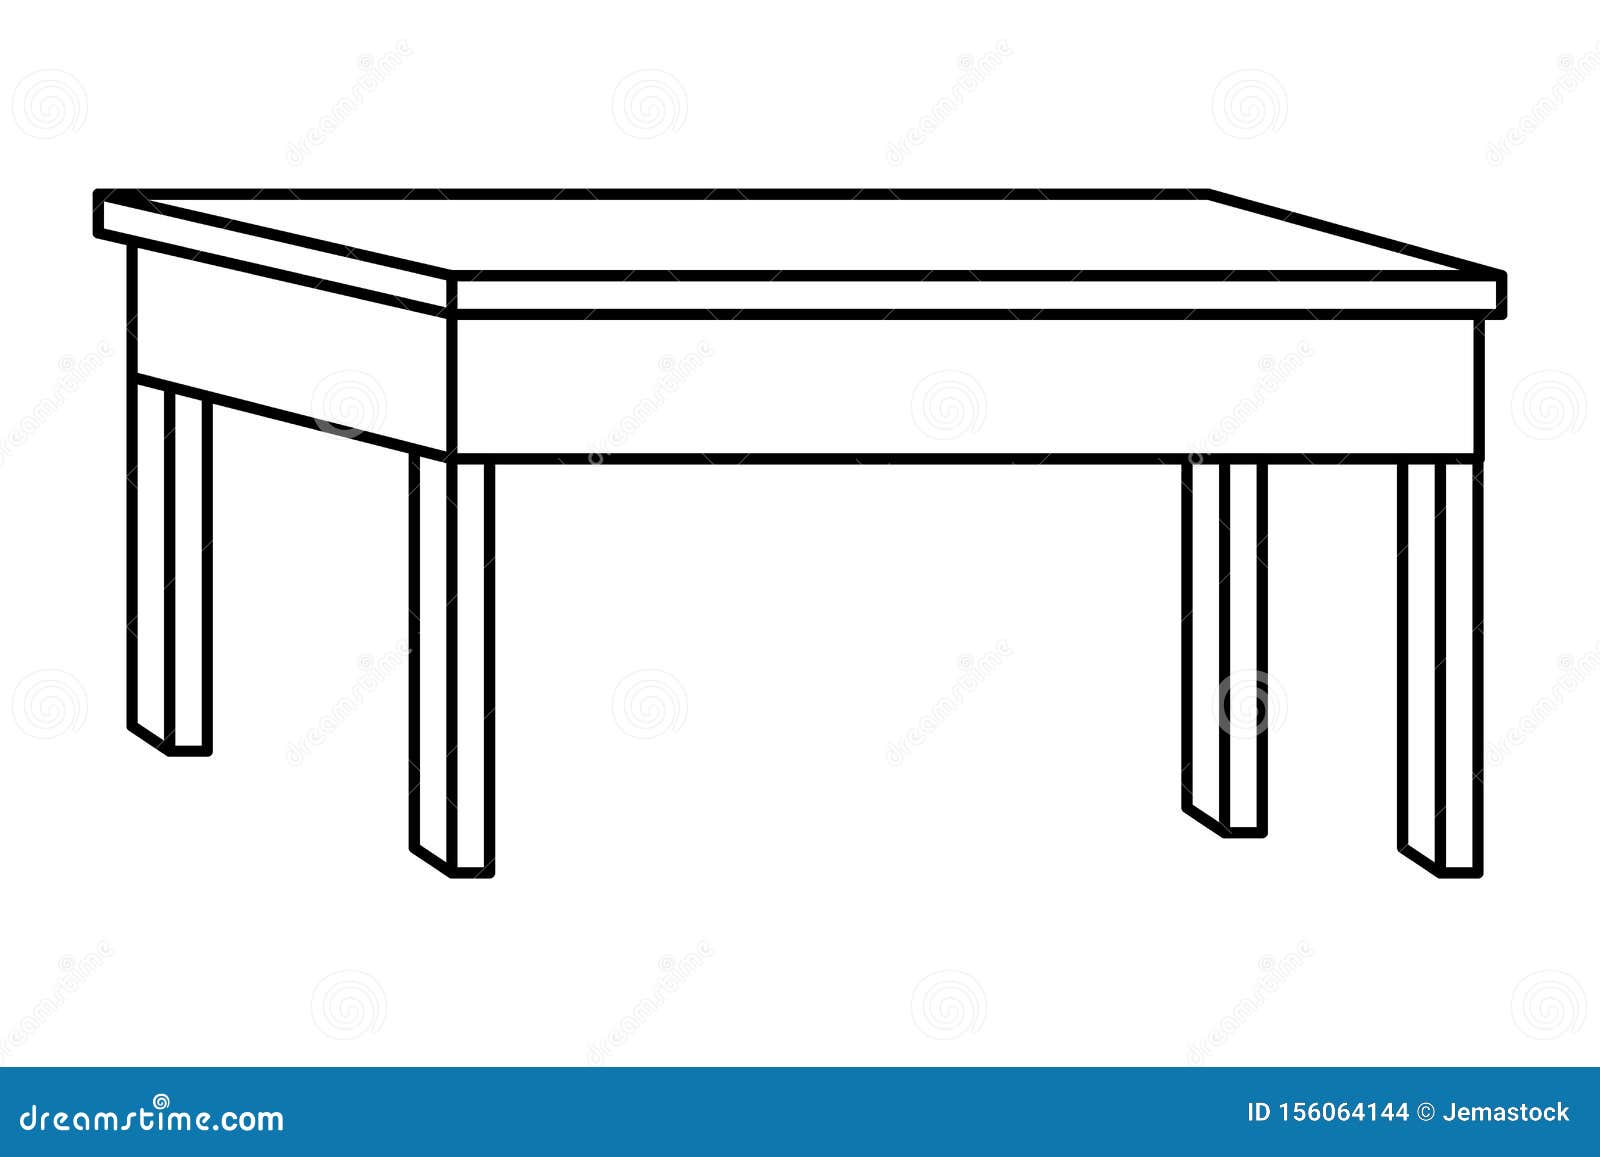 Как нарисовать плоский стол